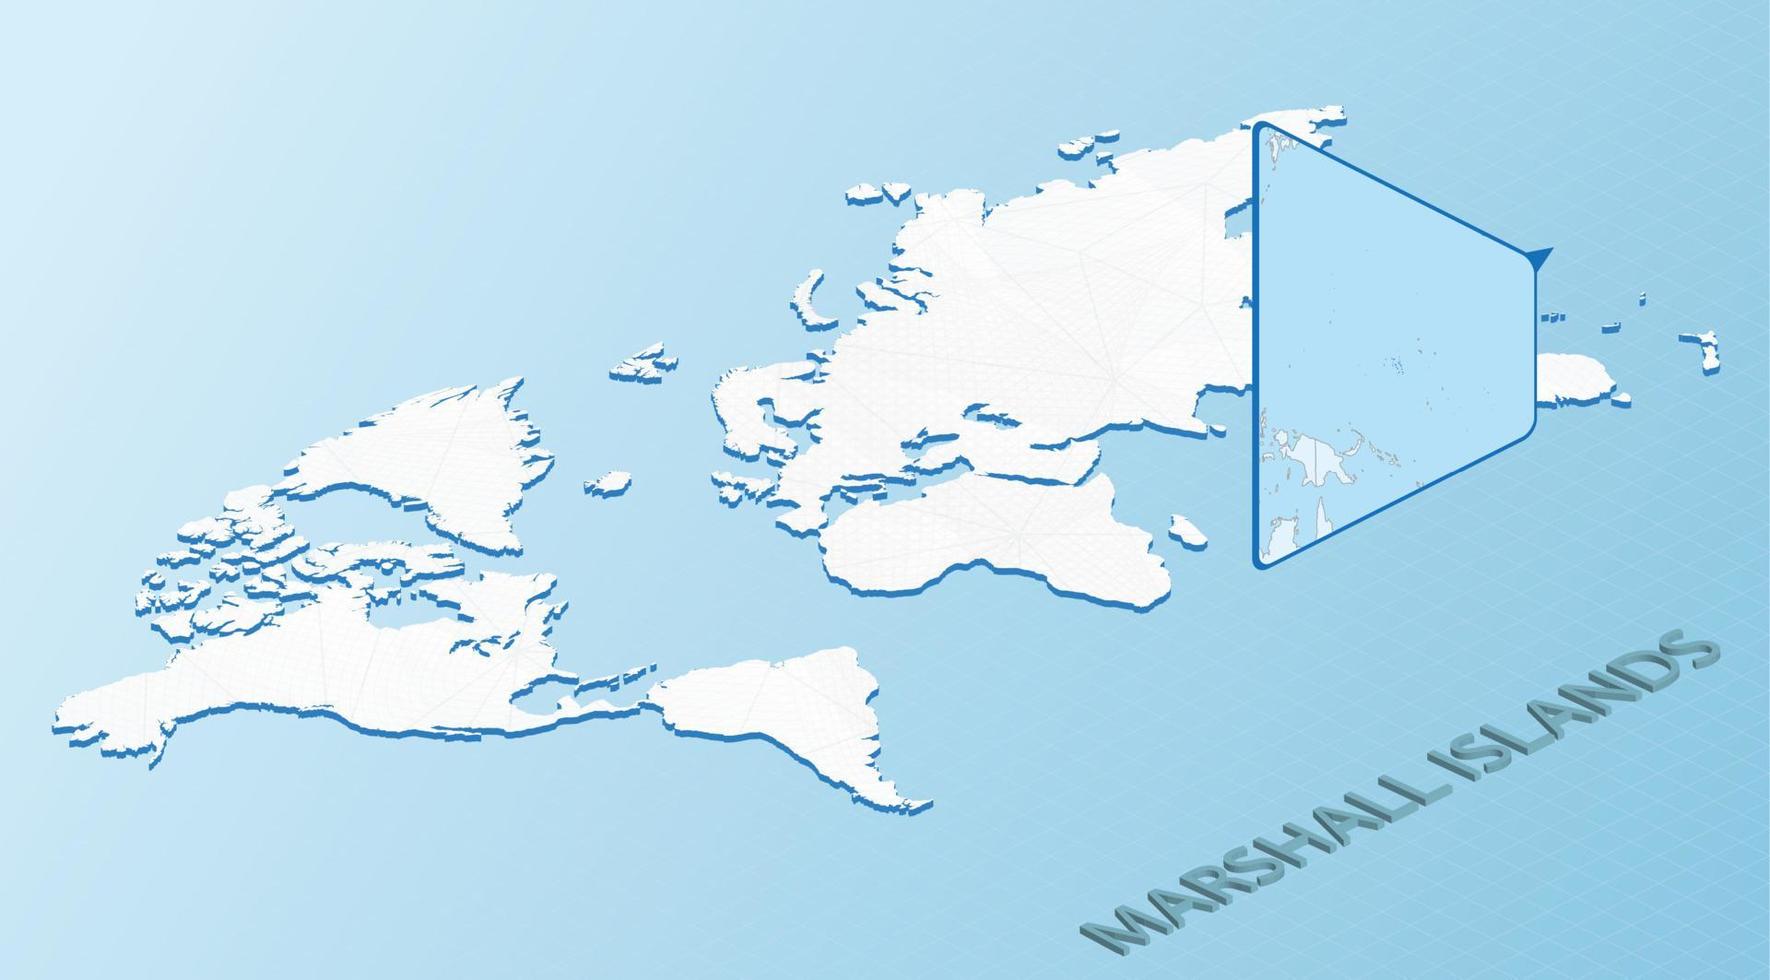 carte du monde en style isométrique avec carte détaillée des îles marshall. carte des îles marshall bleu clair avec carte du monde abstraite. vecteur